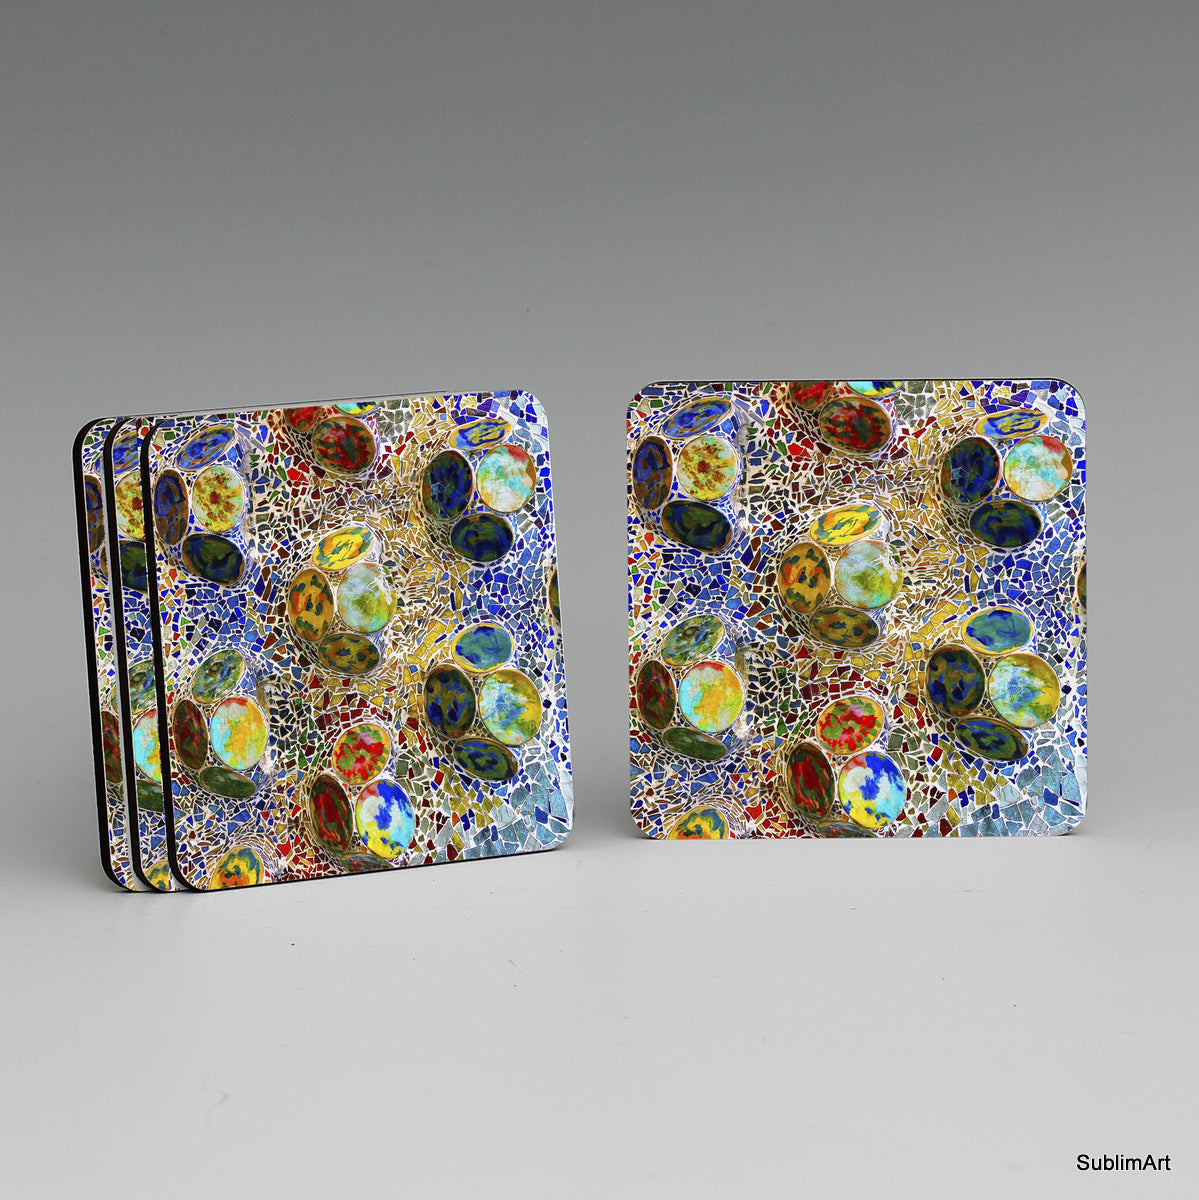 SUBLIMART: MDF Hardboard Set of 4 Coasters - Design: Gaudi 02